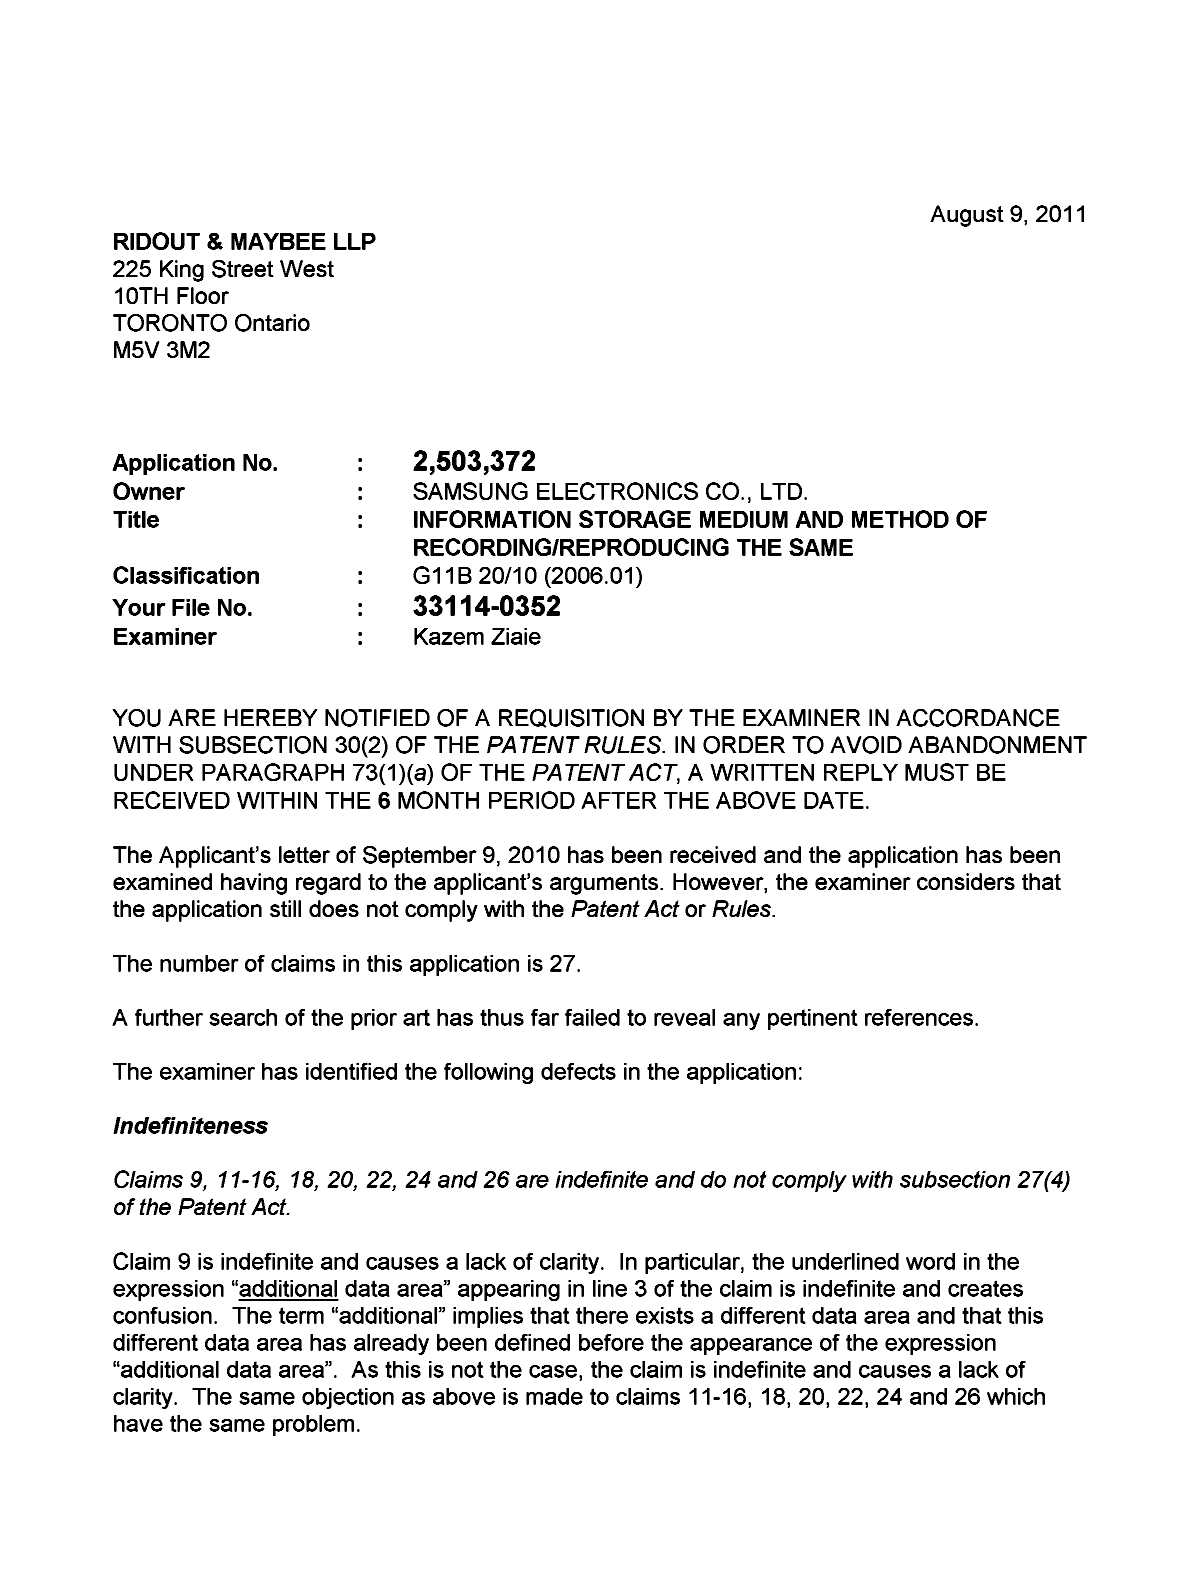 Document de brevet canadien 2503372. Poursuite-Amendment 20110809. Image 1 de 2